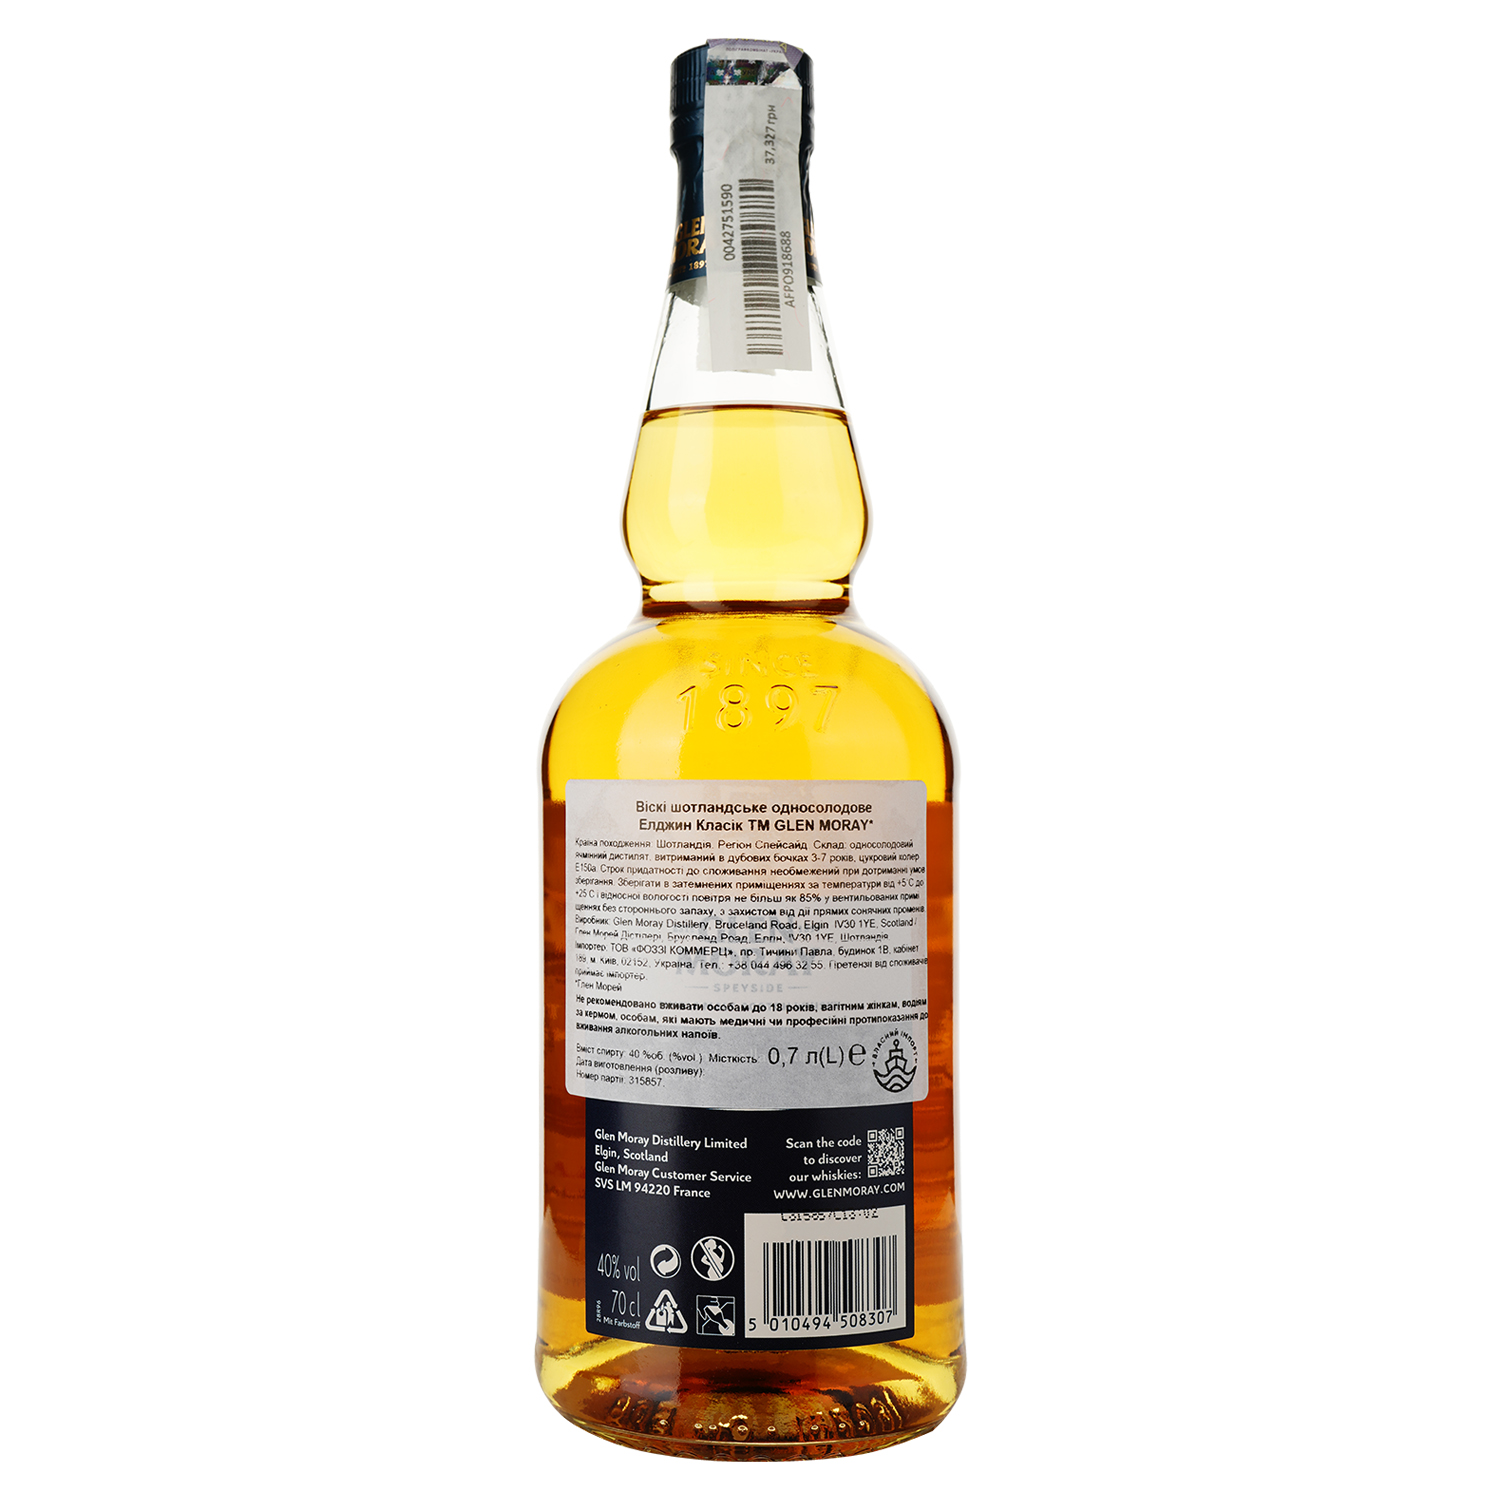 Віскі Glen Moray Classic Single Malt Scotch Whisky, в подарунковій упаковці, 40%, 0,7 л (739150) - фото 3